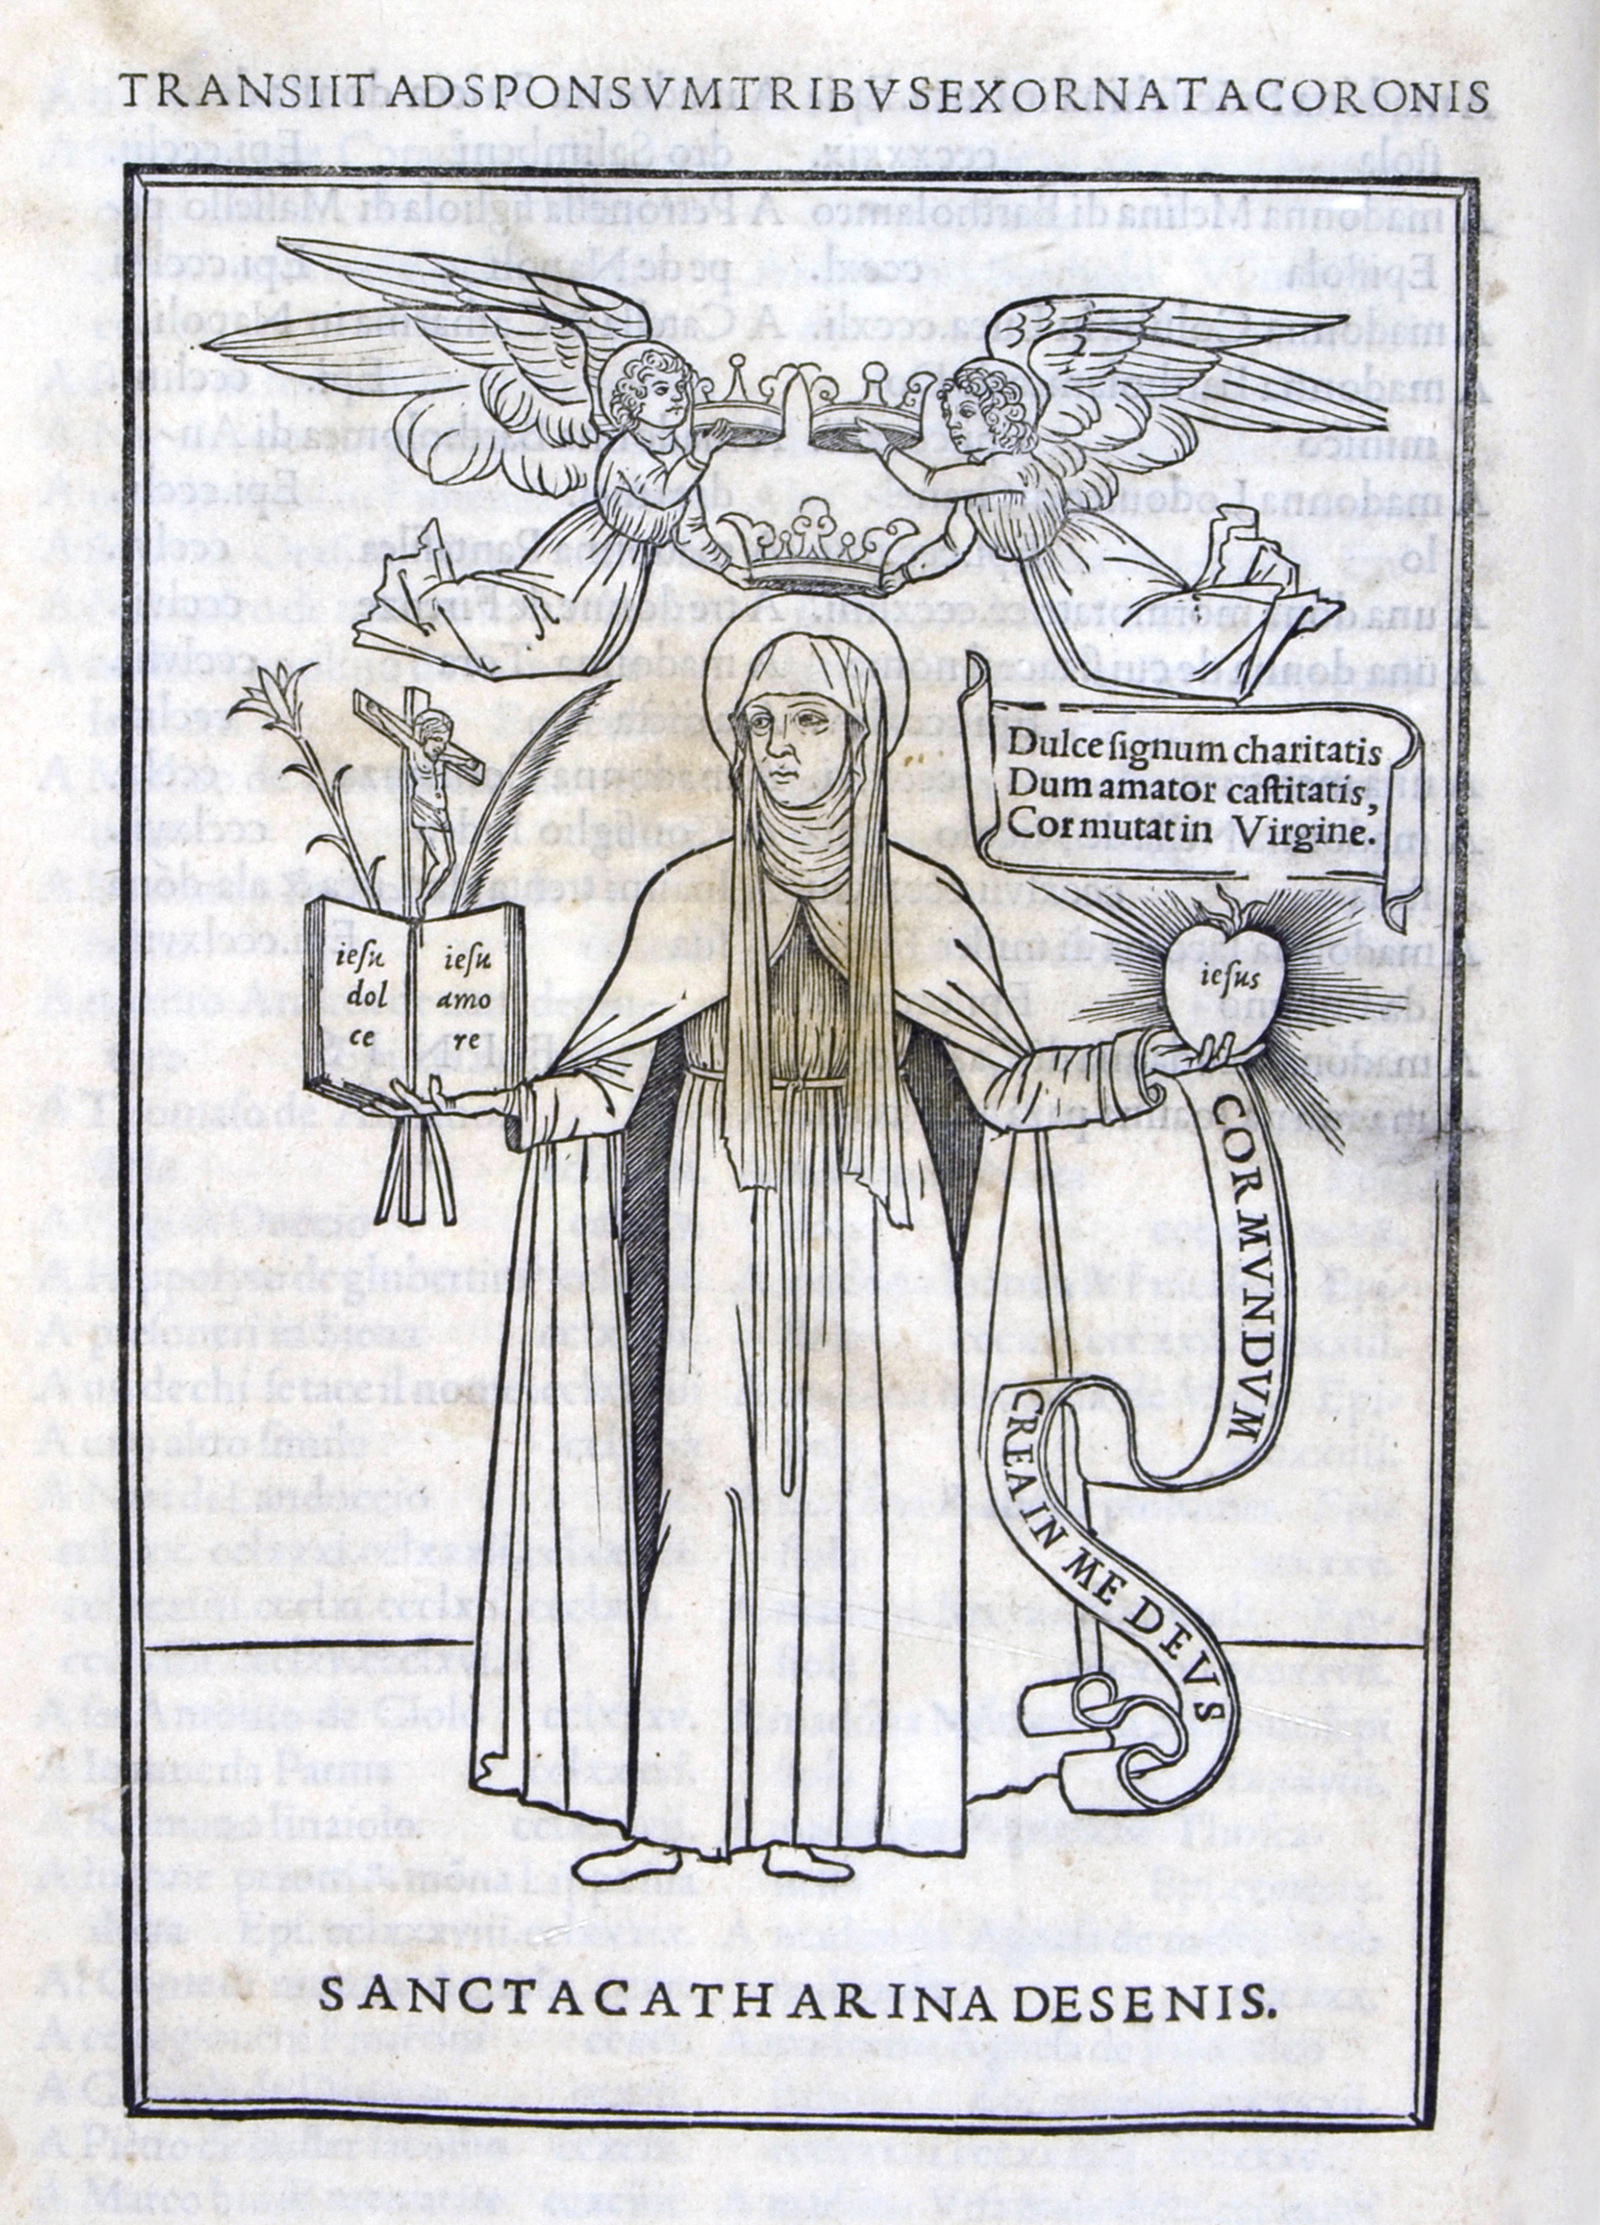 Epistole di s. Caterina da Siena, Aldo Manuzio, Venezia 1500. Biblioteca Universitaria di Bologna.